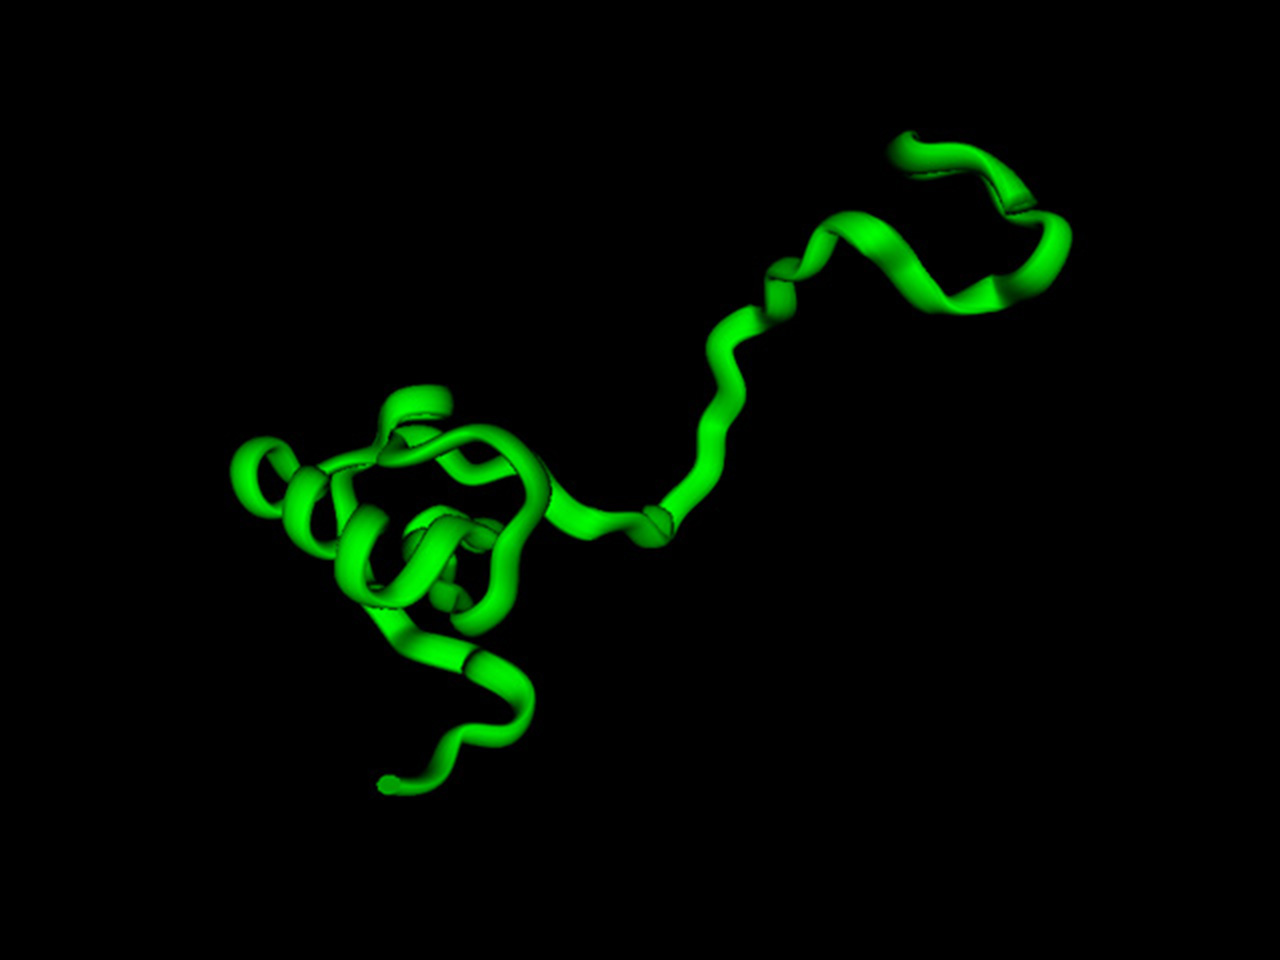 Genesis Protein model